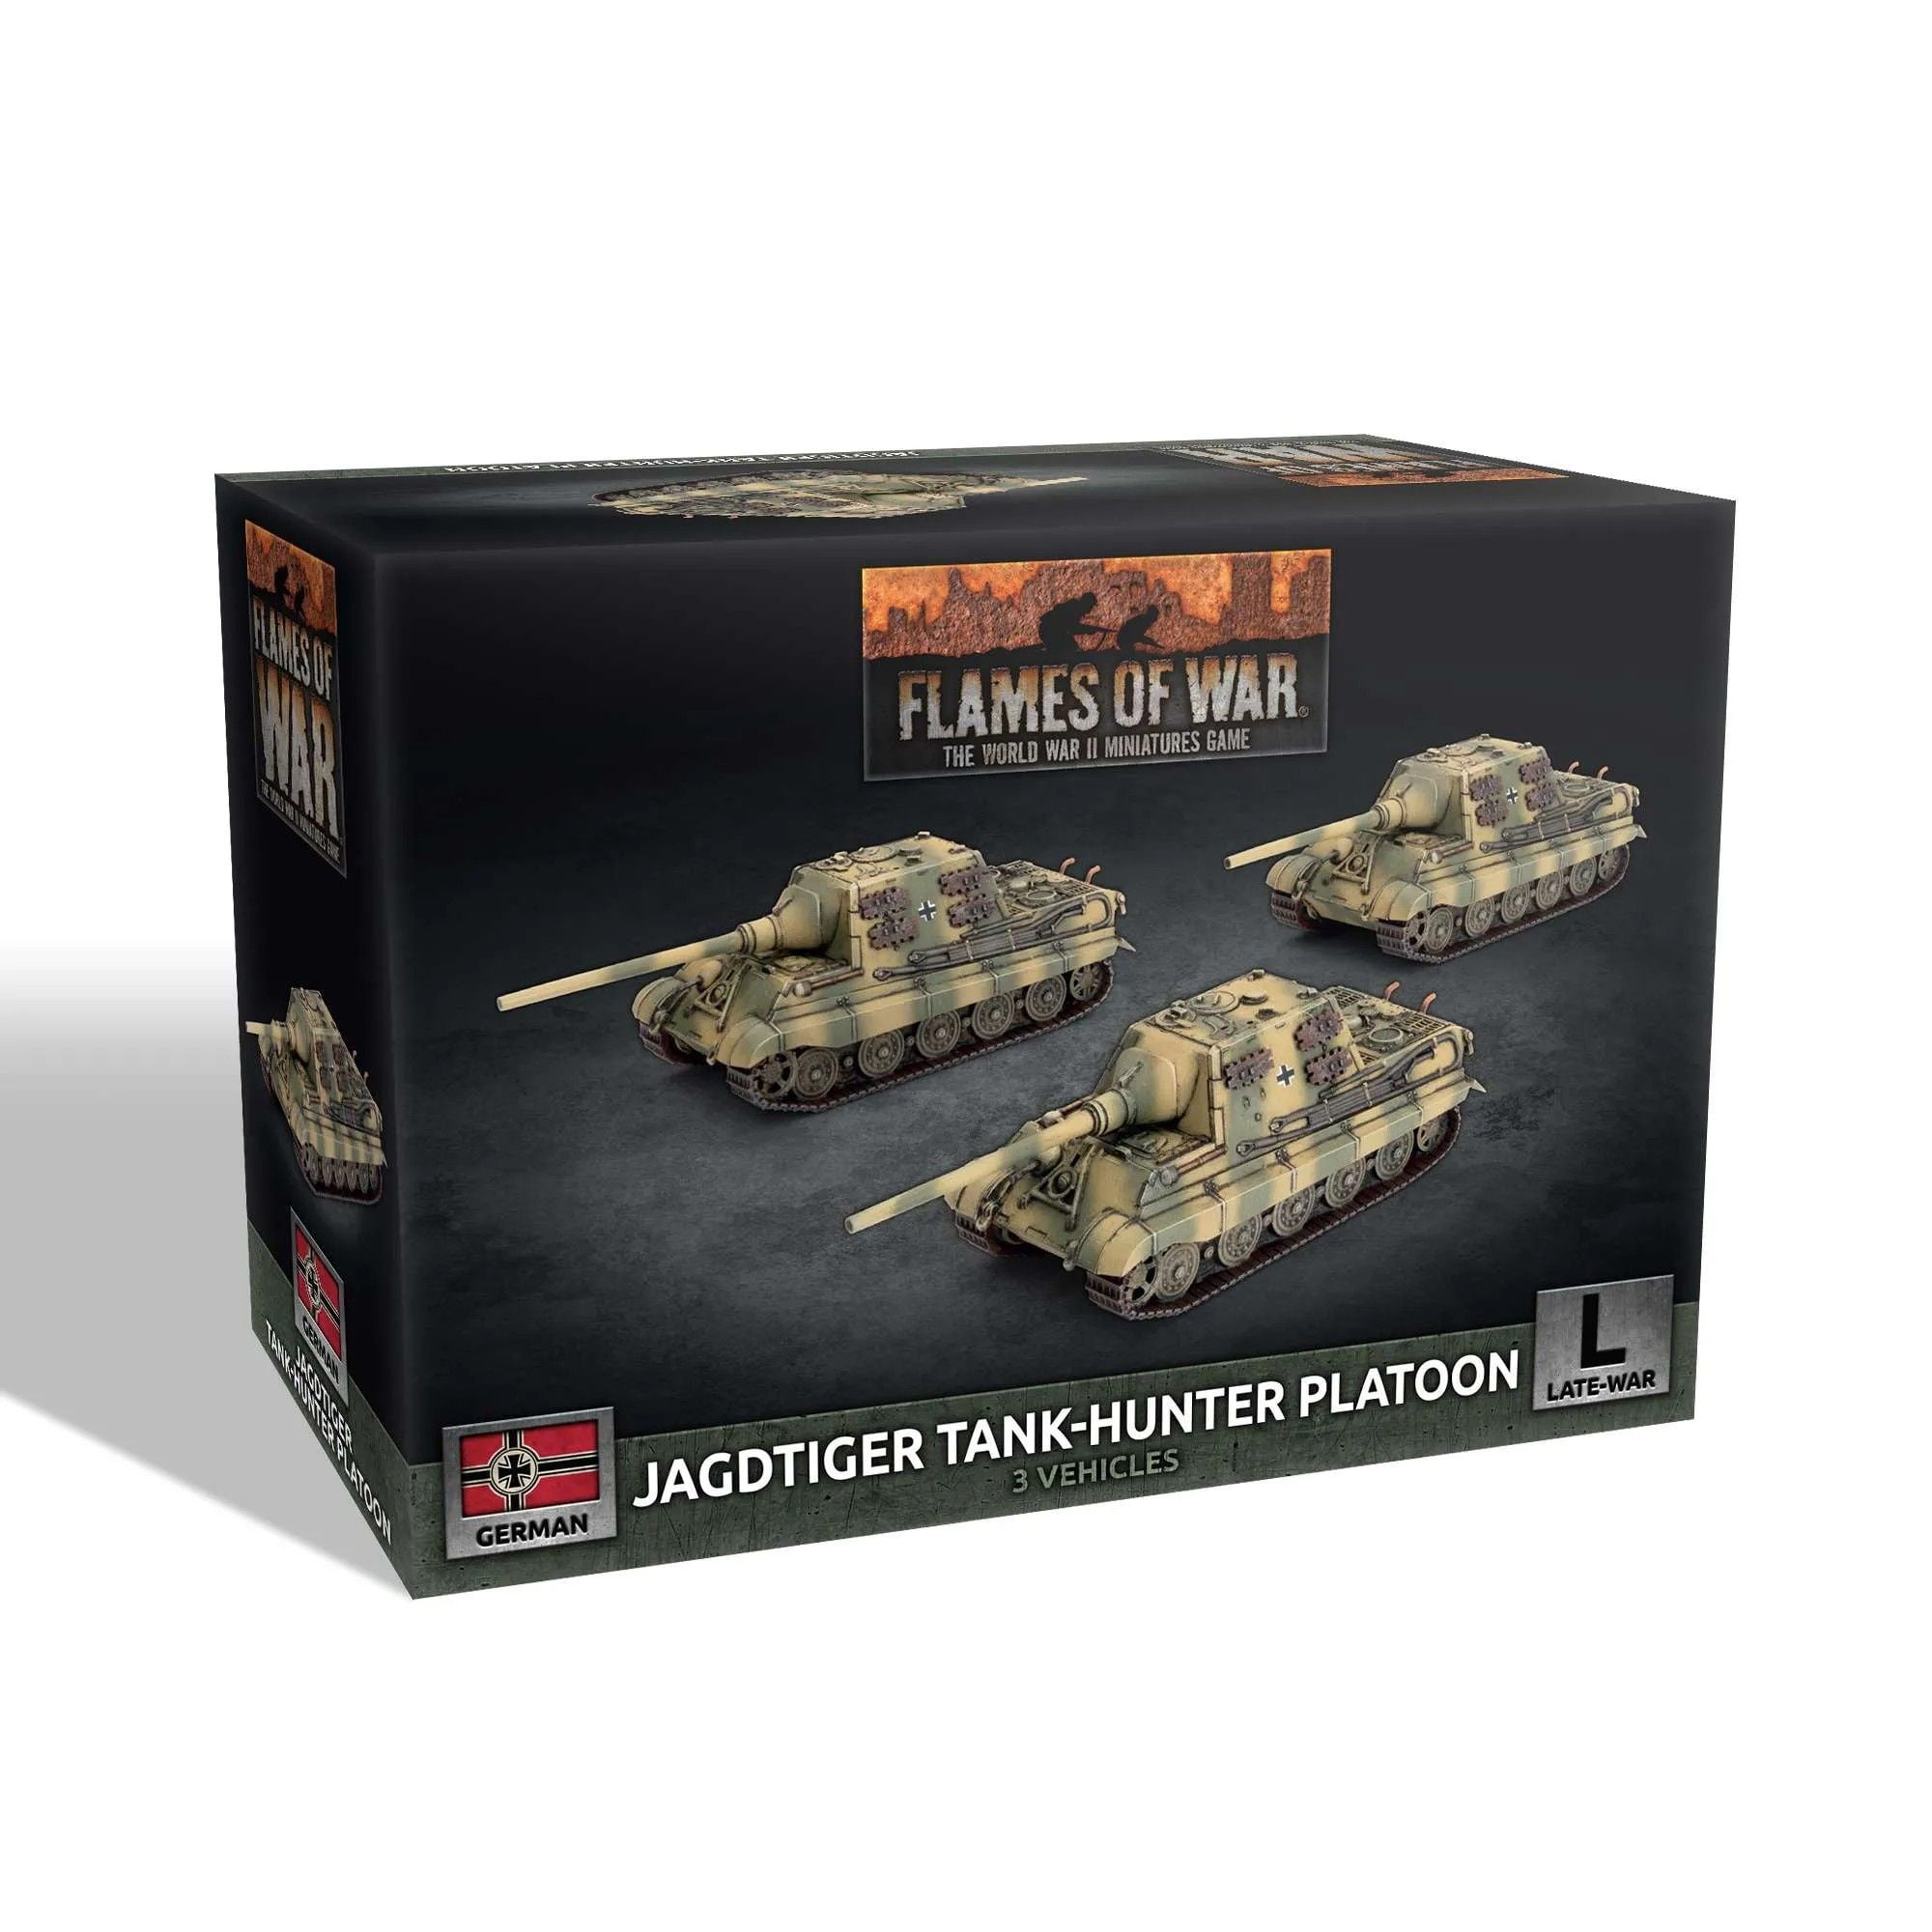 Jagdtiger (12.8cm) Tank-Hunter Platoon